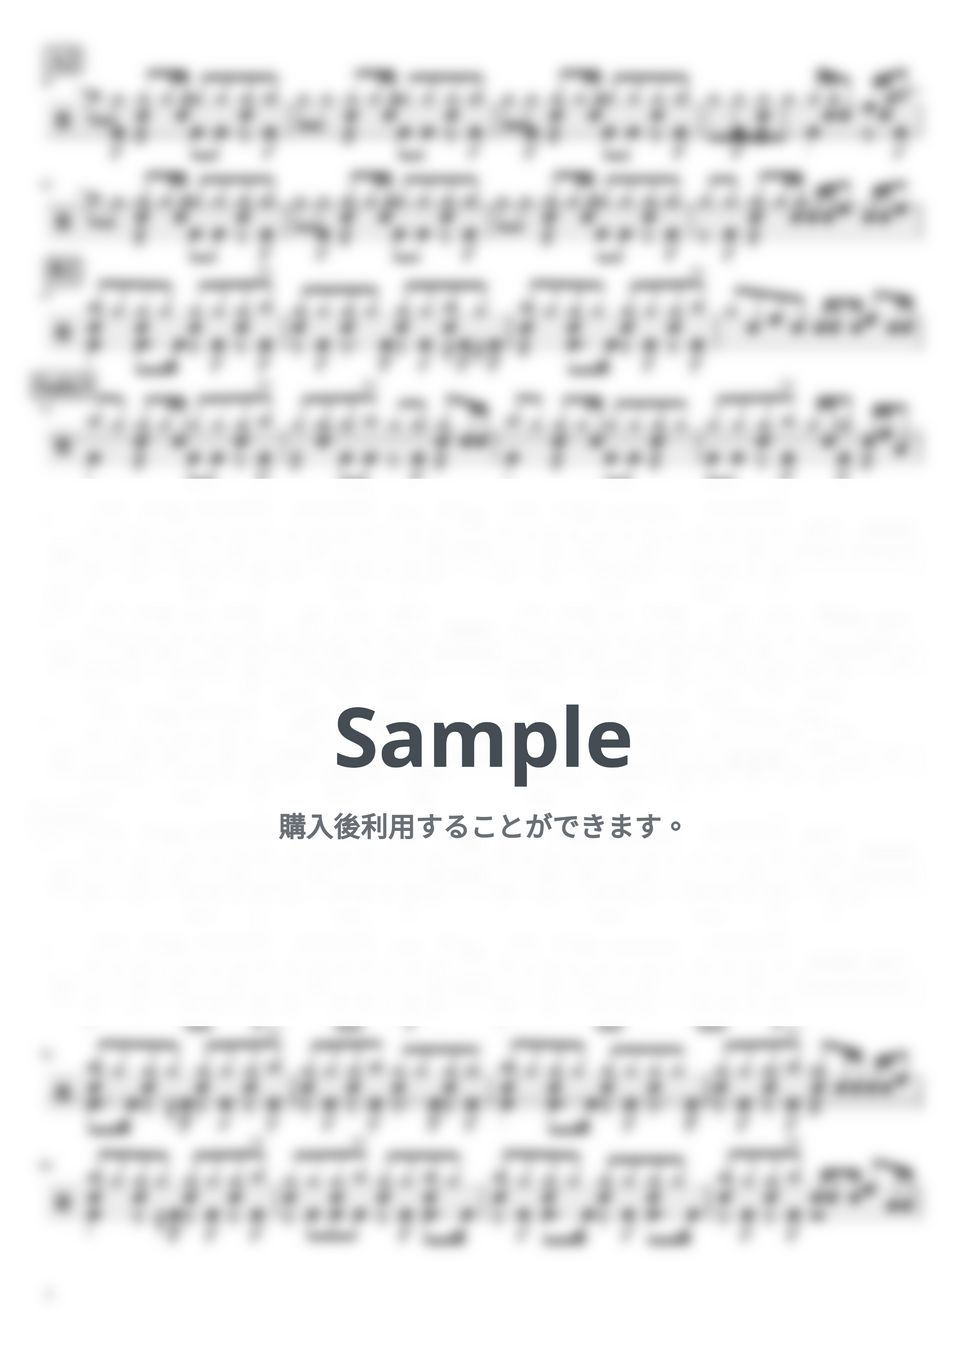 椎名林檎 - 正しい街 (ドラム譜面) by cabal